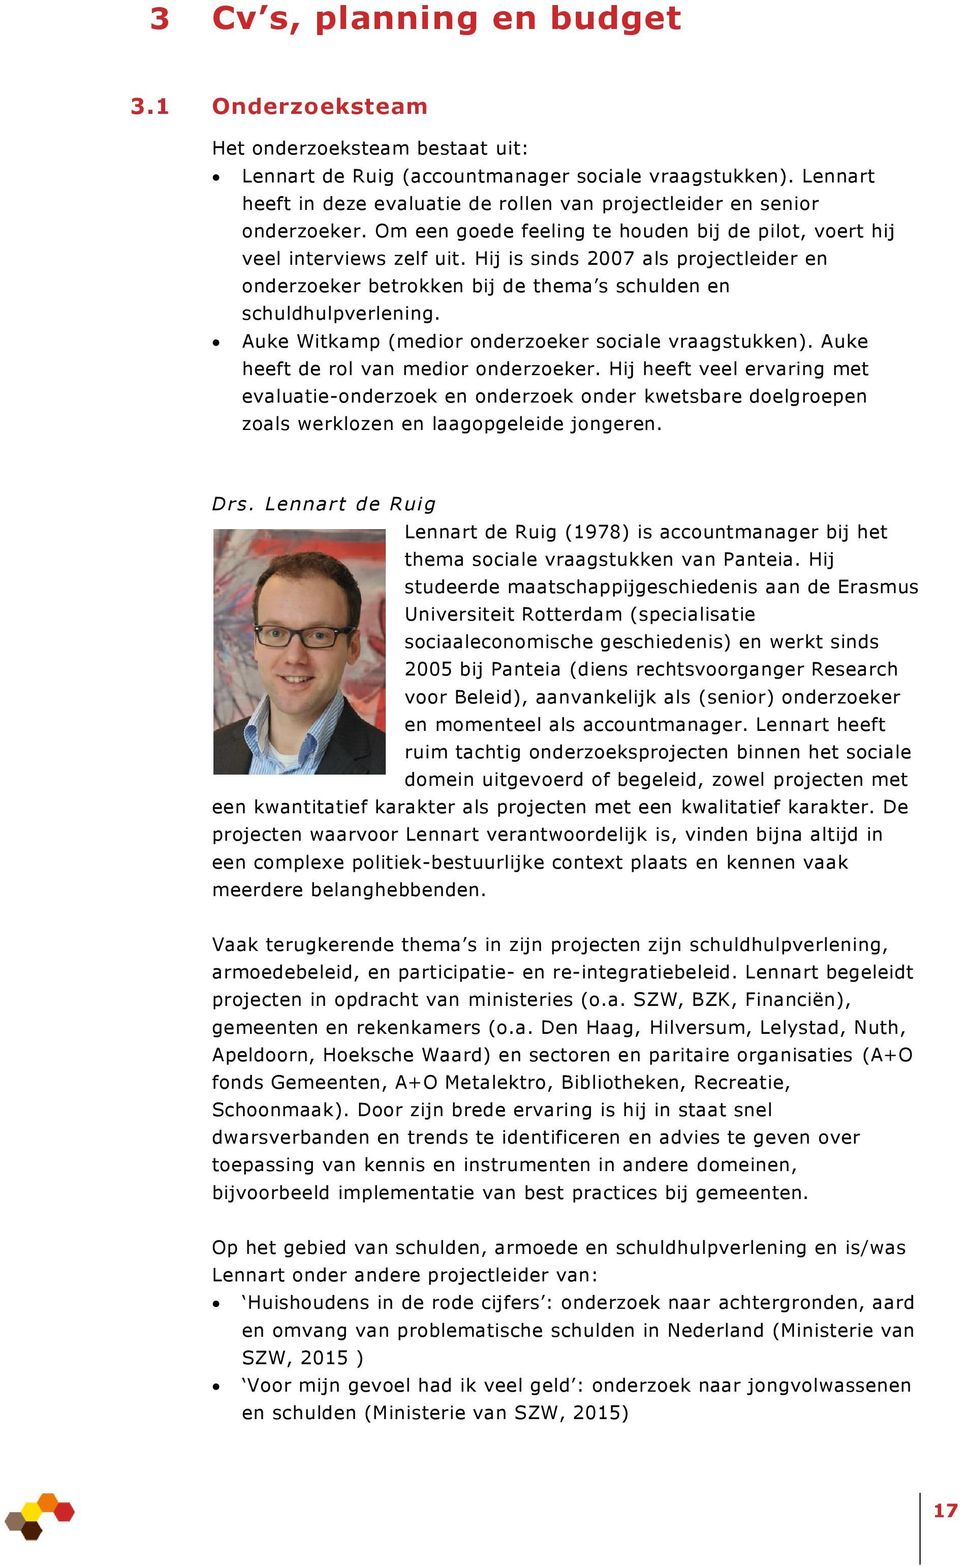 Hij is sinds 2007 als projectleider en onderzoeker betrokken bij de thema s schulden en schuldhulpverlening. Auke Witkamp (medior onderzoeker sociale vraagstukken).